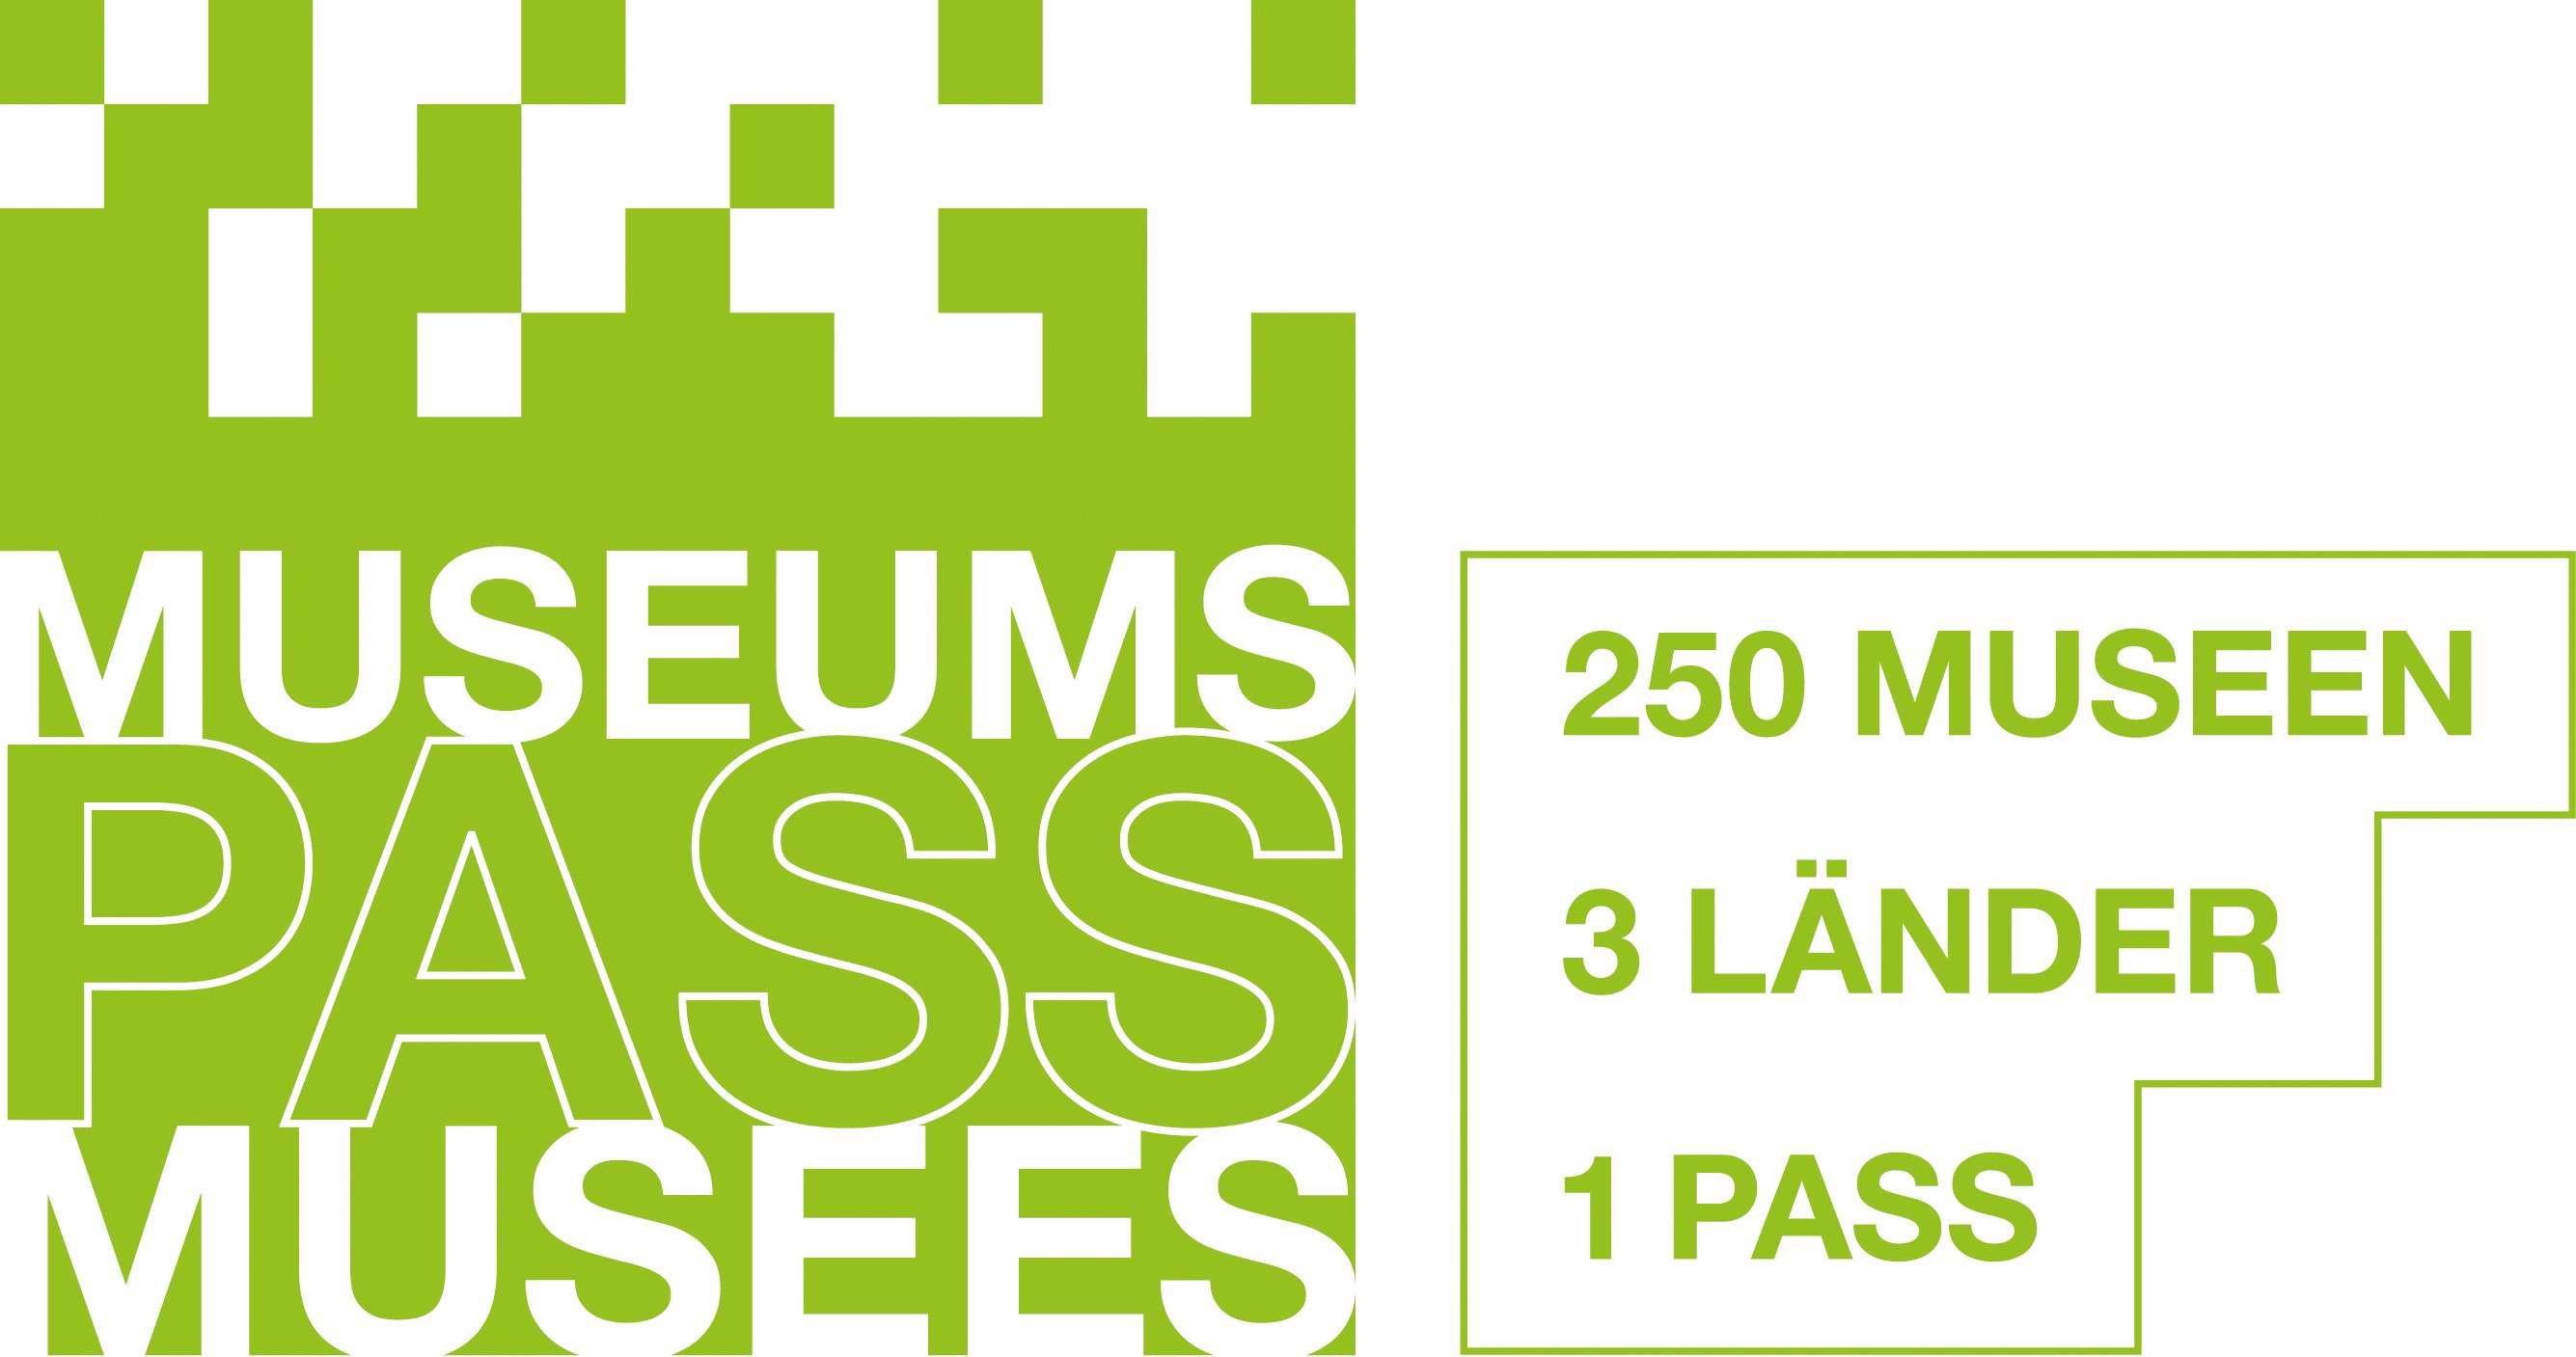 Museums-PASS-Musées